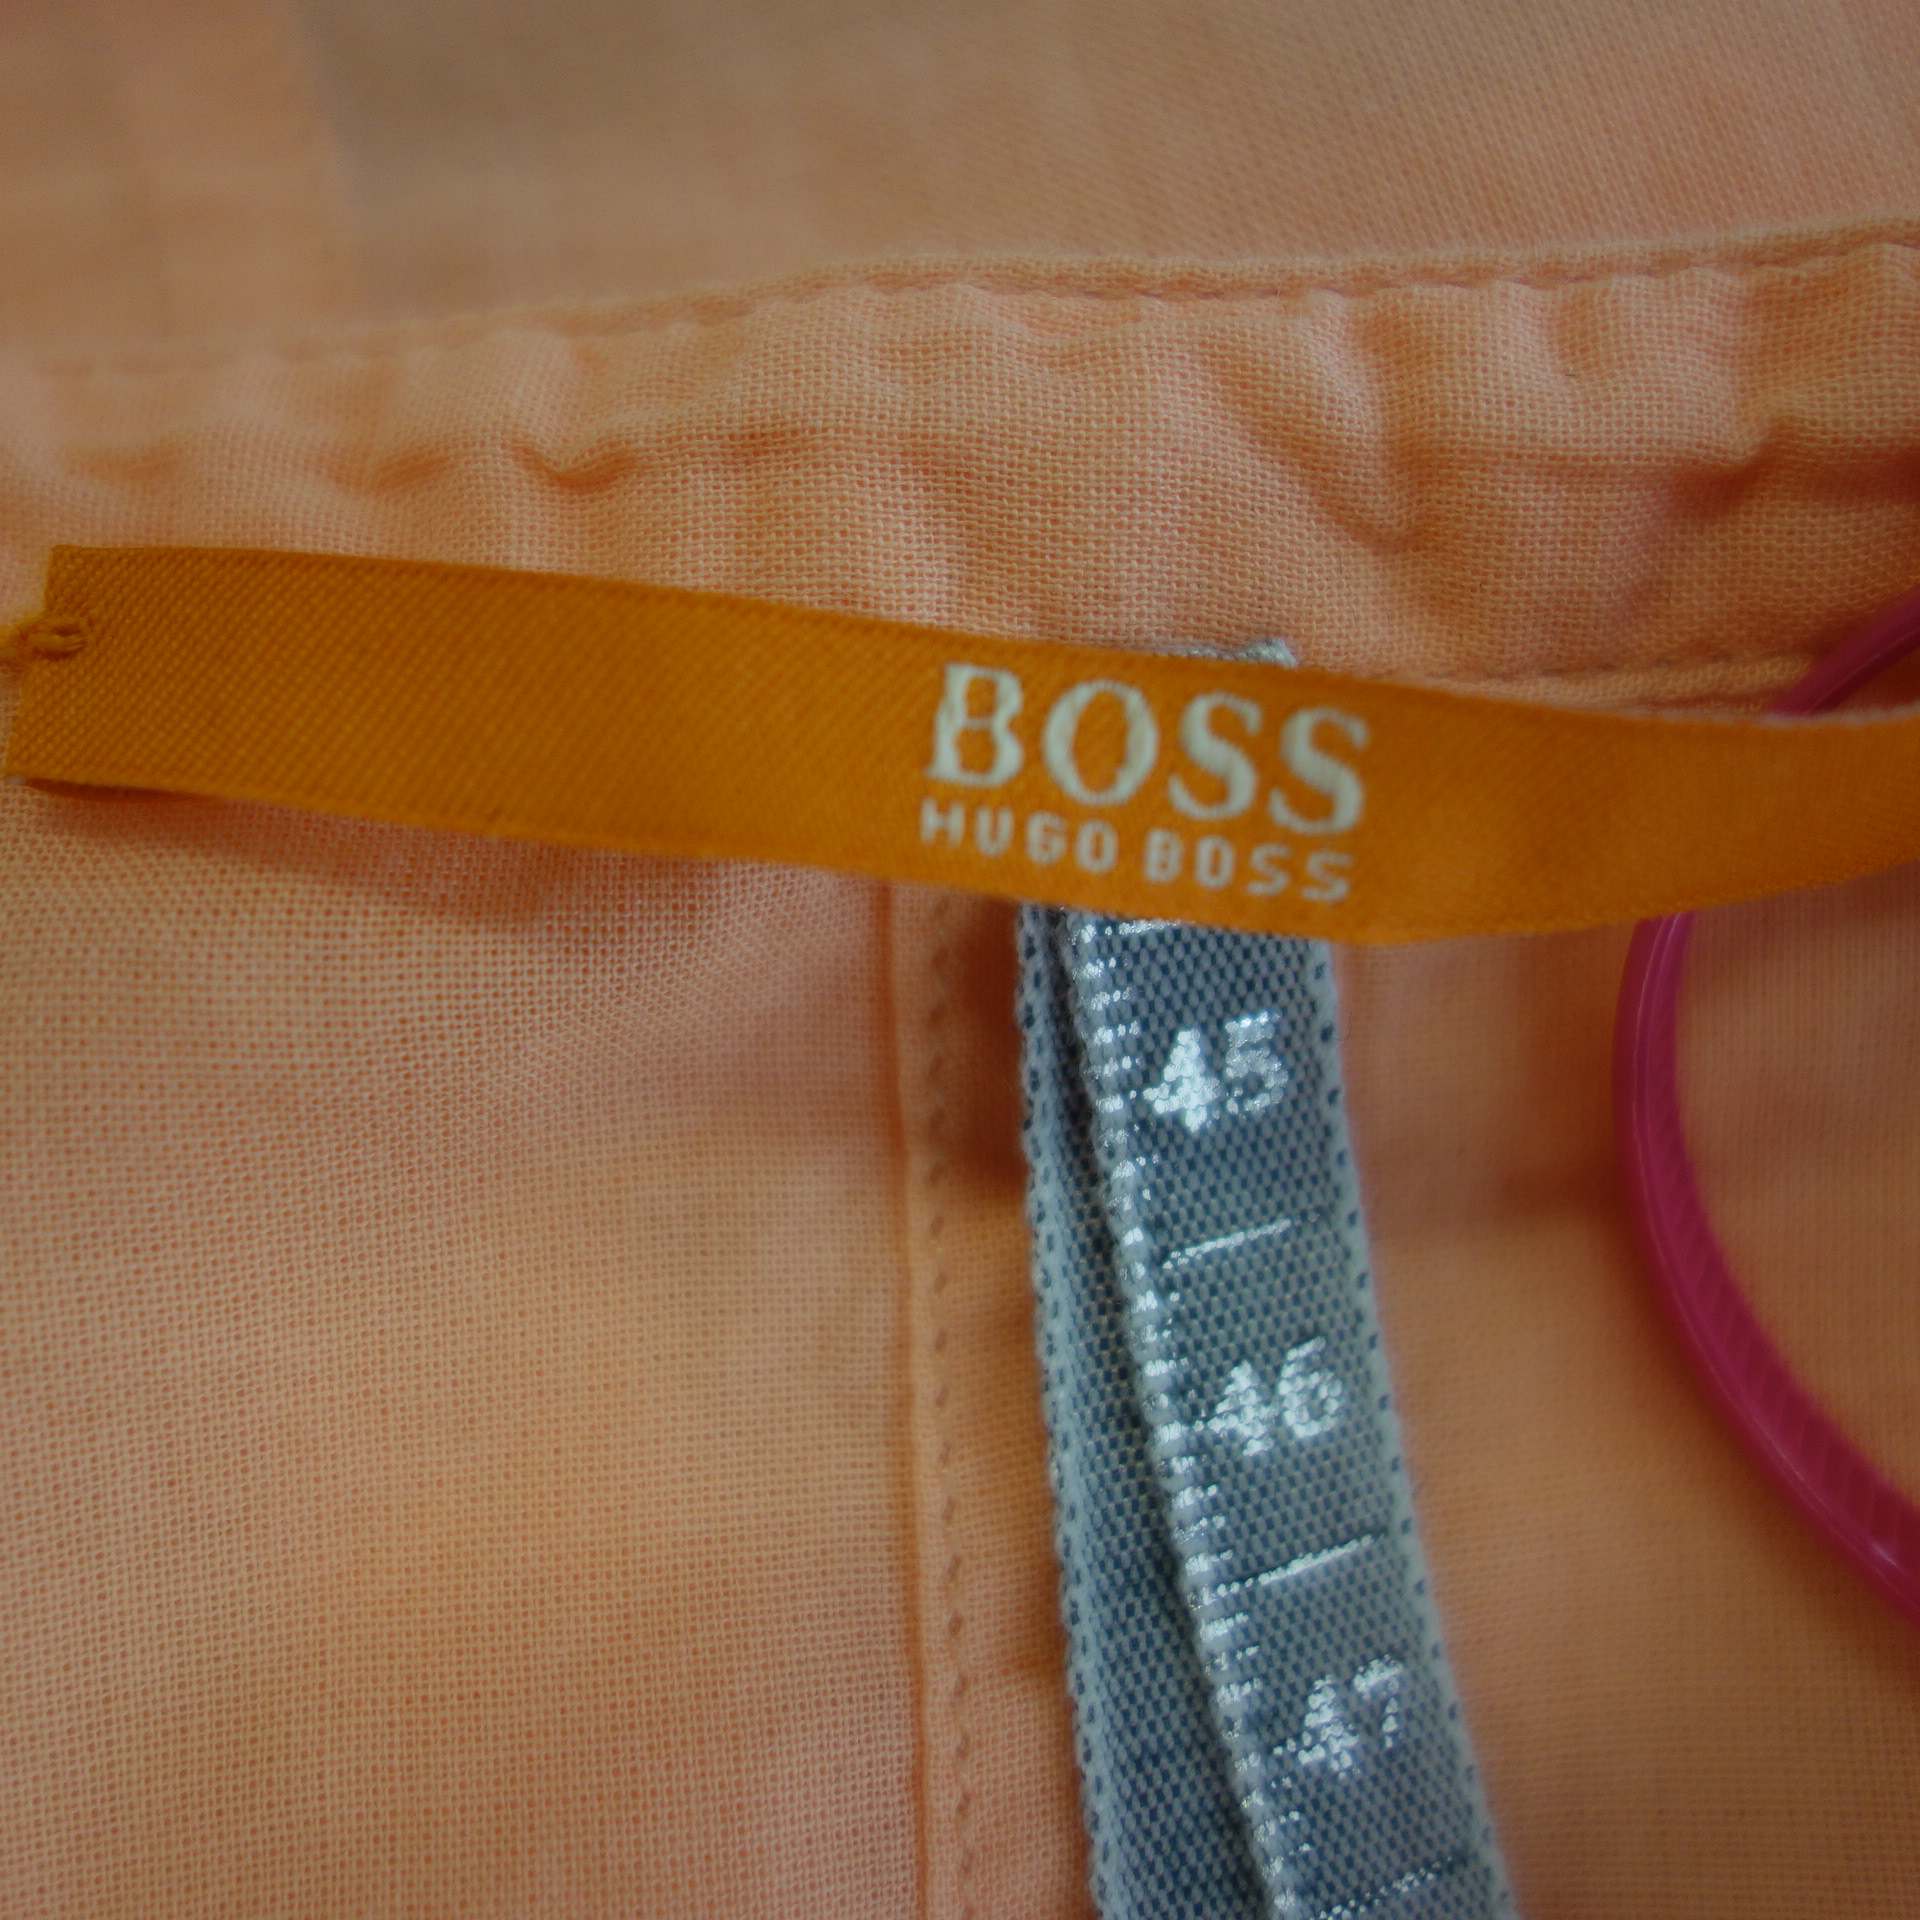 HUGO BOSS Damen Bluse Tunika Hemd Oberteil Apricot Reine Baumwolle Größe 42 XL